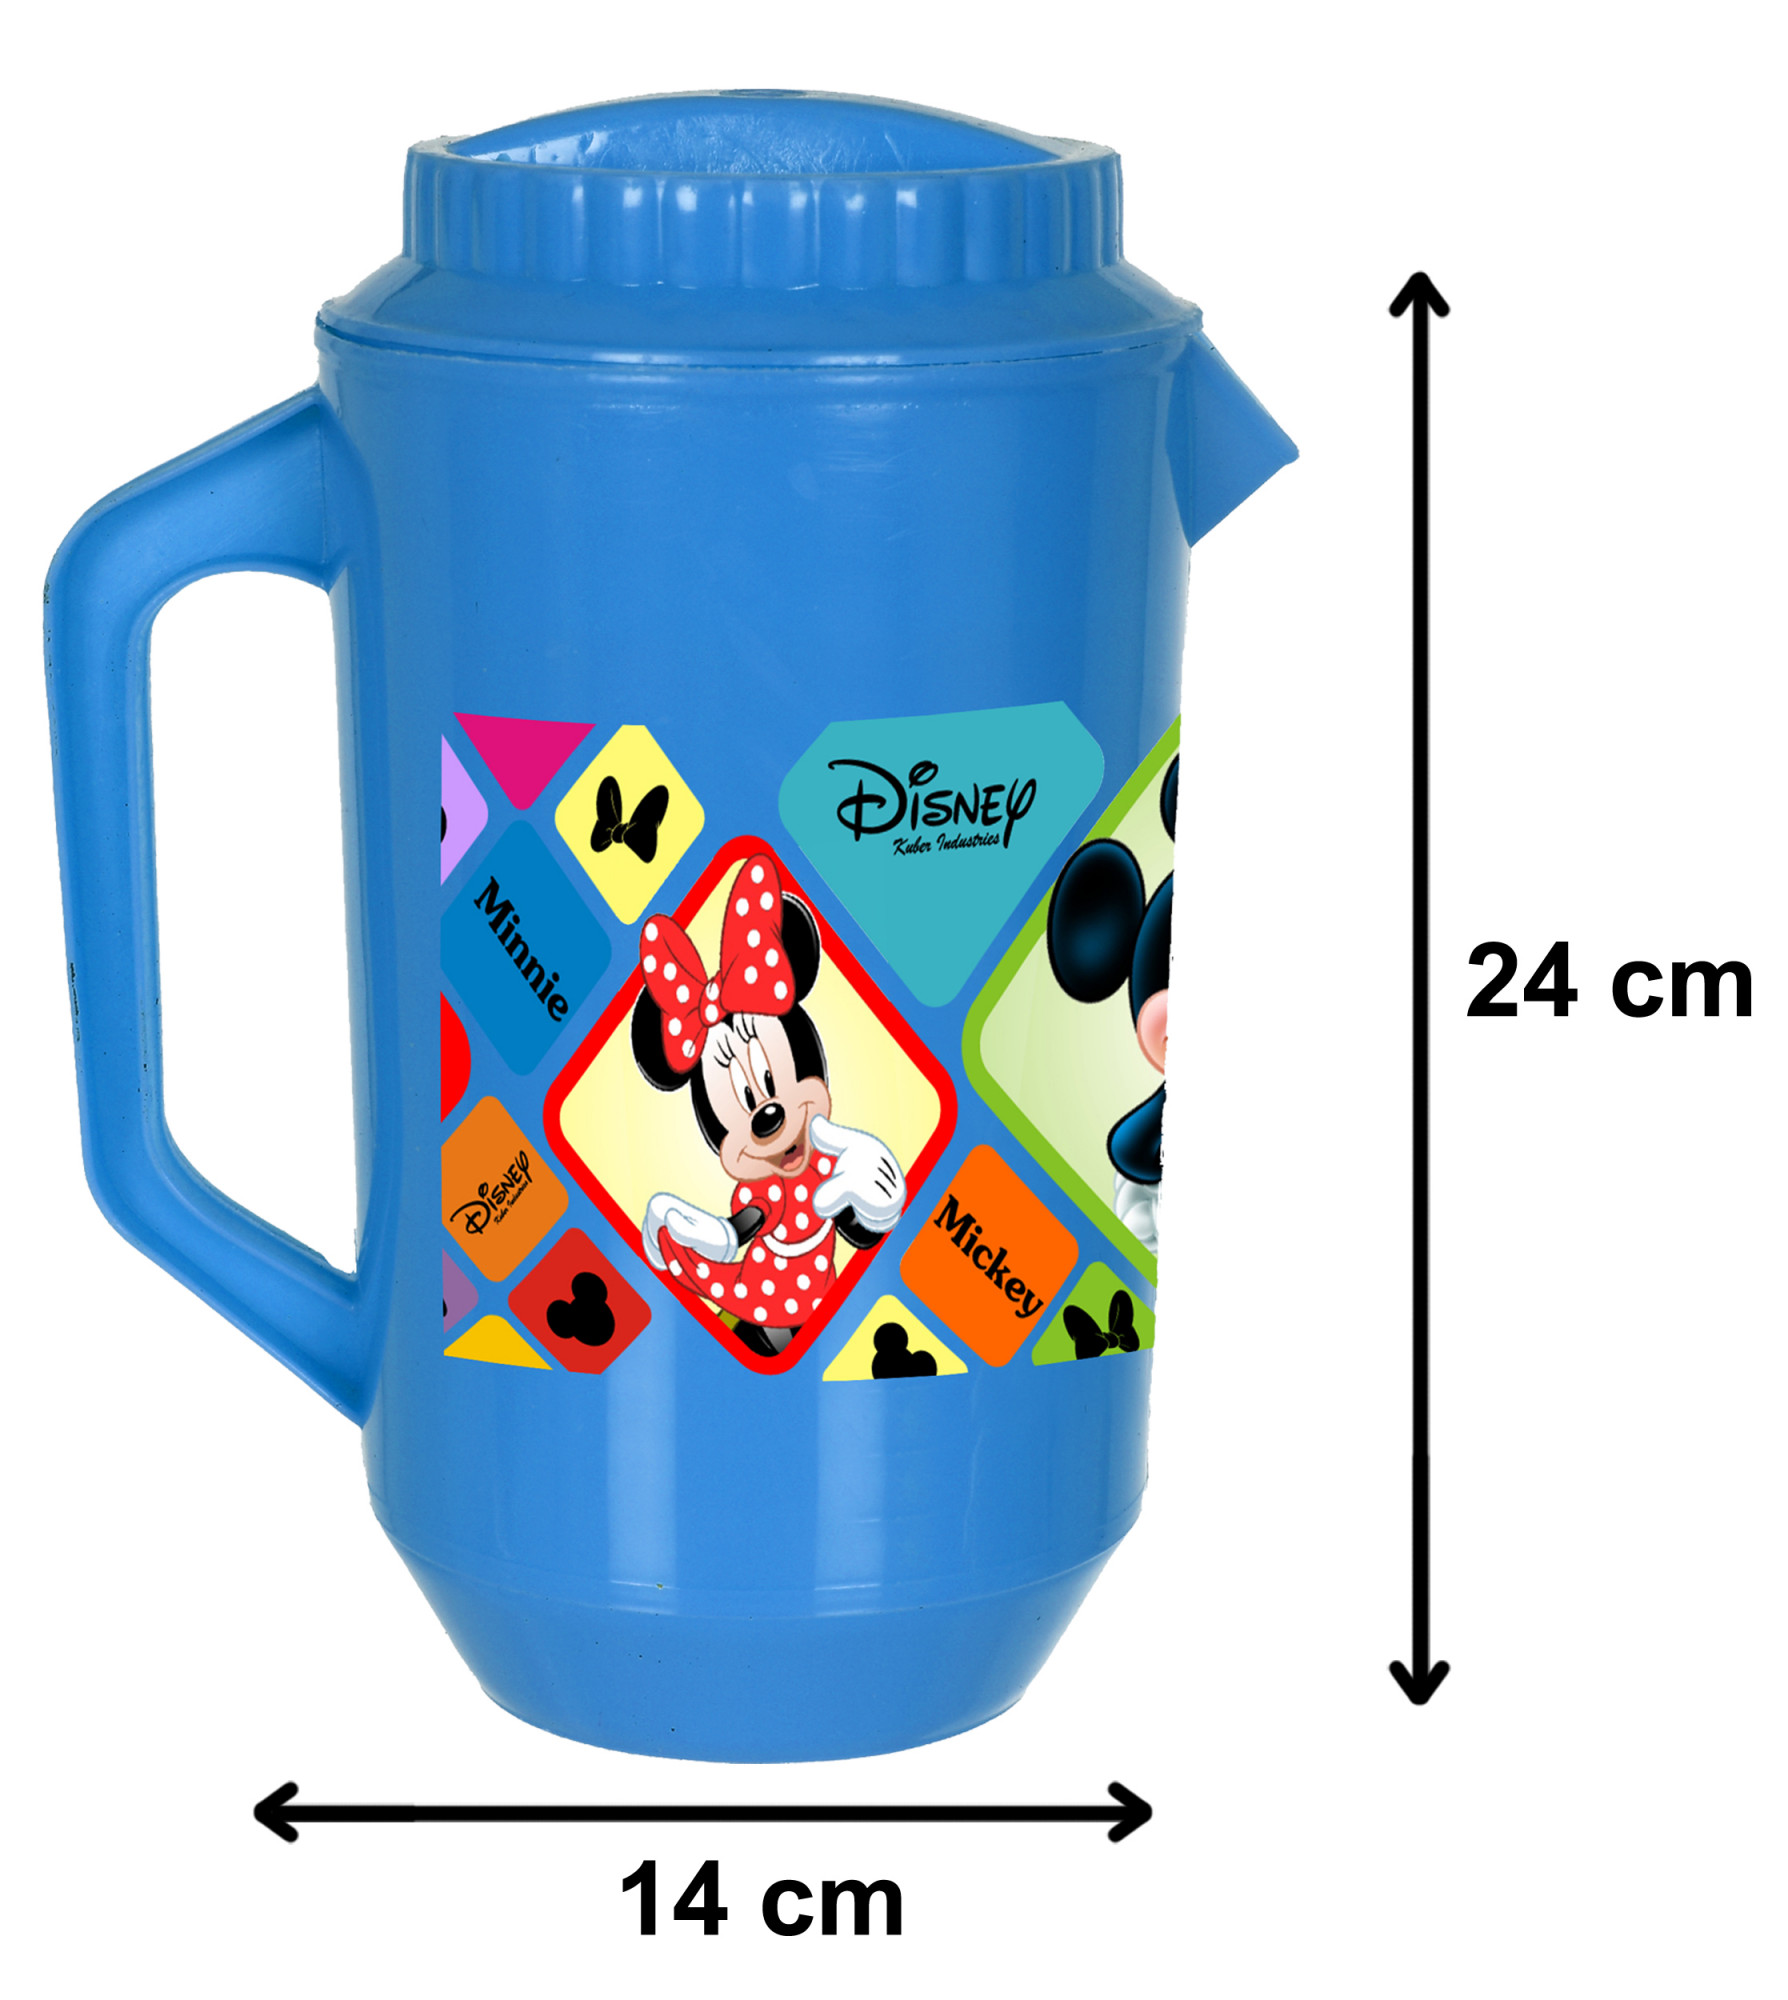 Kuber Industries Disney Mickey Minnie Print Unbreakable Multipurpose Plastic Water & Juice Jug With Lid,2 Ltr (Blue)